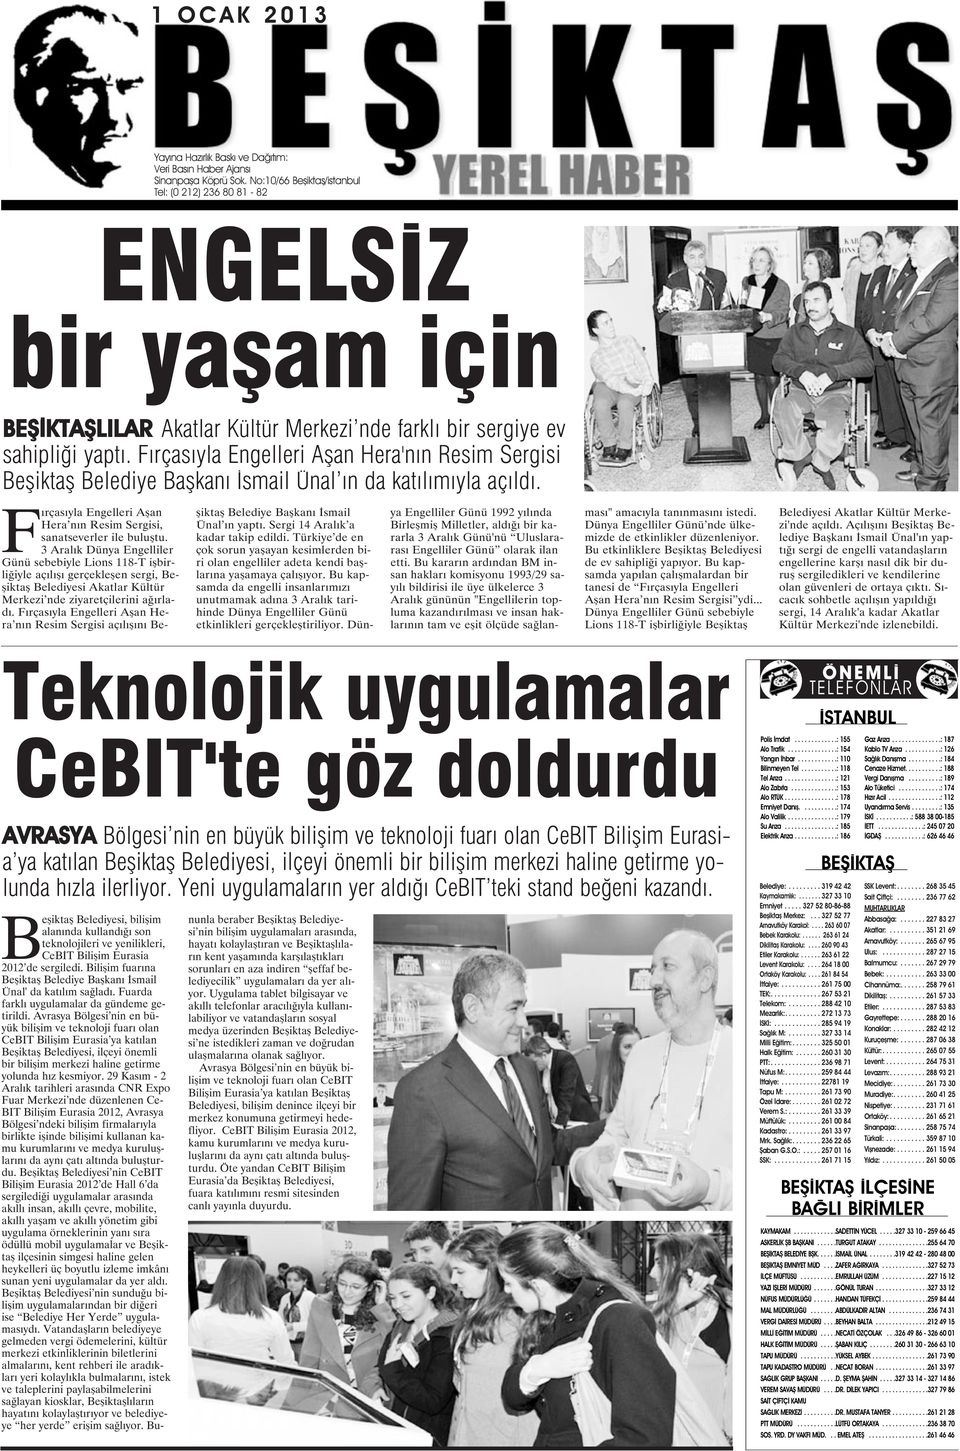 Fırçasıyla Engelleri Aşan Hera'nın Resim Sergisi Beşiktaş Belediye Başkanı İsmail Ünal ın da katılımıyla açıldı. Fırçasıyla Engelleri Aşan Hera nın Resim Sergisi, sanatseverler ile buluştu.